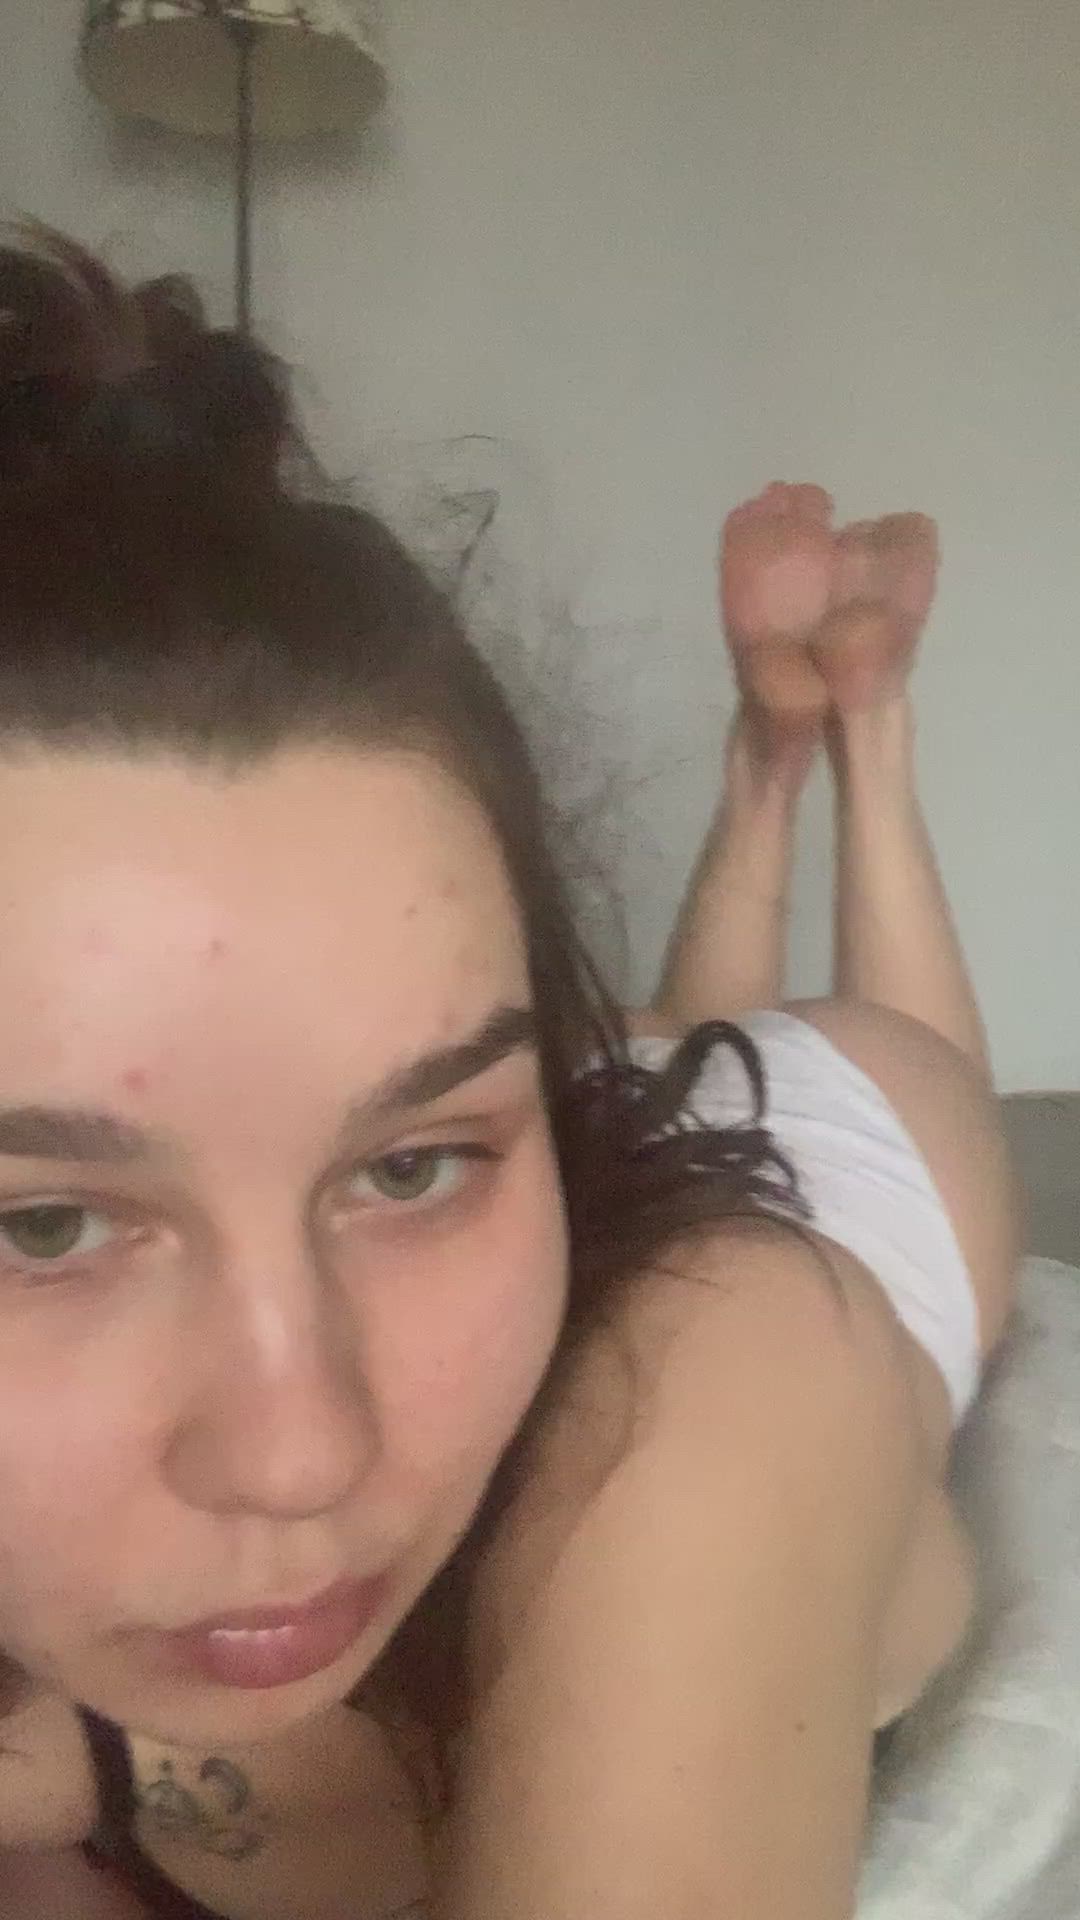 Amateur porn video with onlyfans model berezzkaaa <strong>@berezzkaaa</strong>